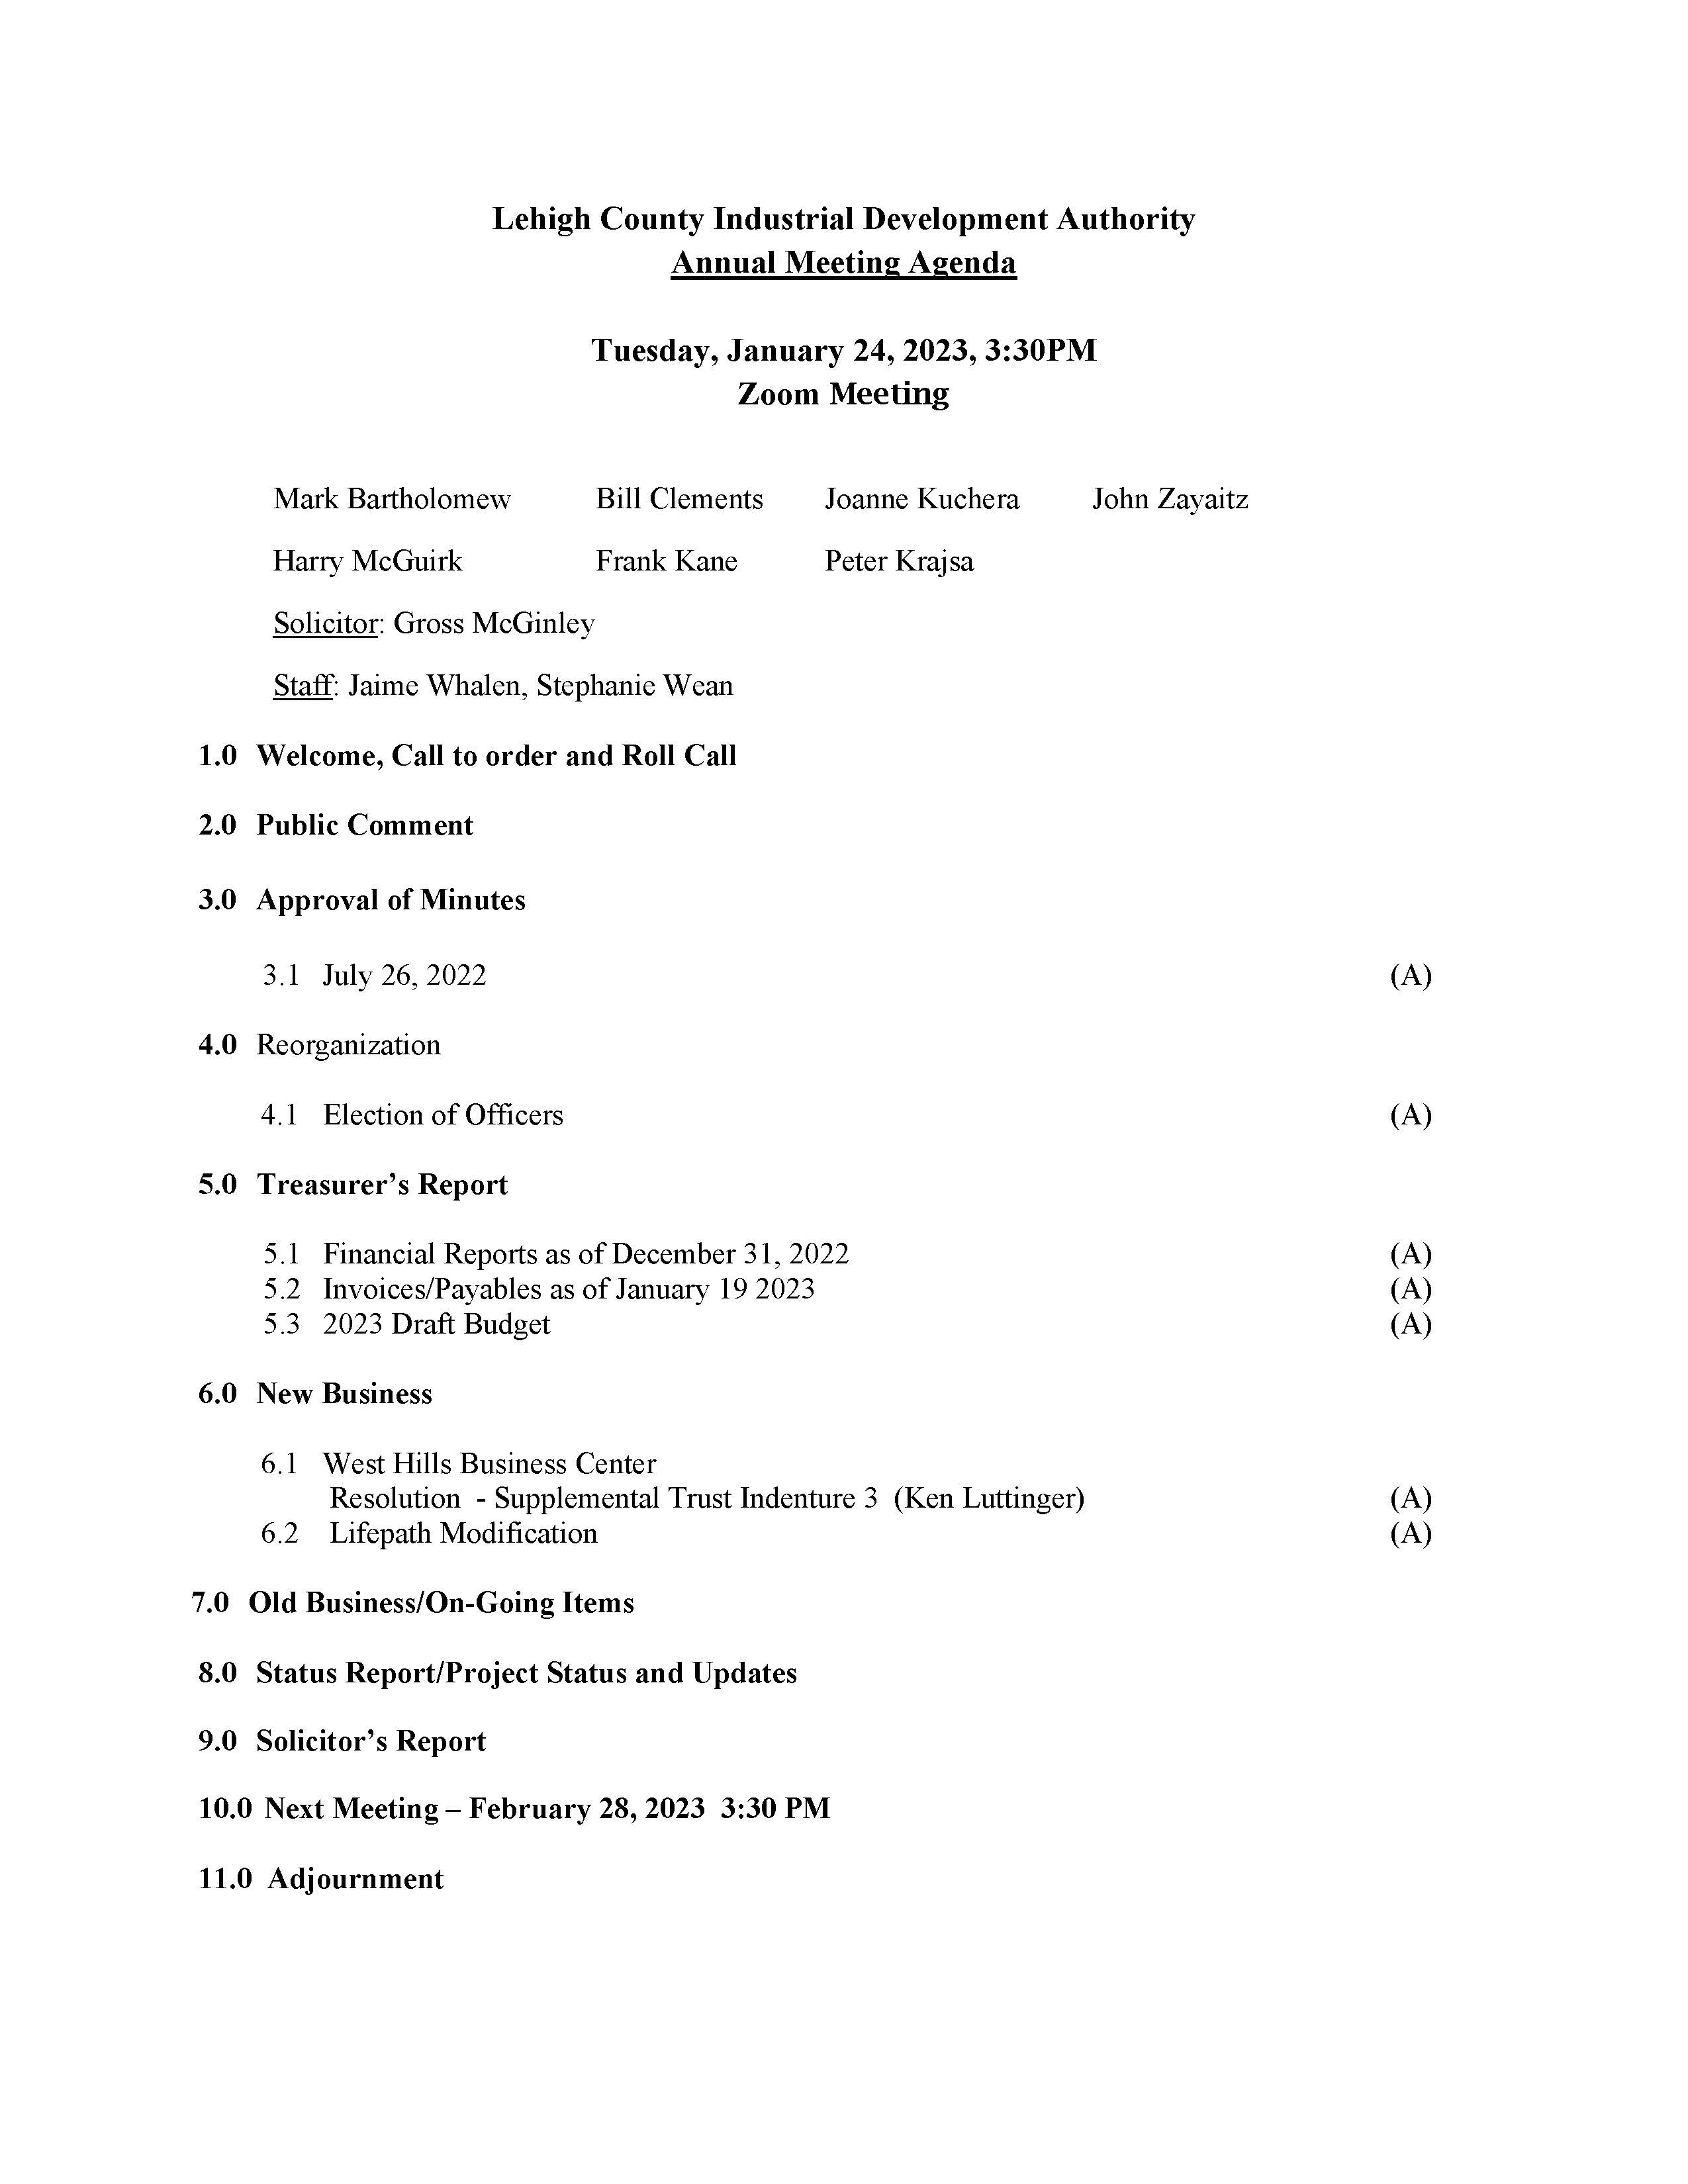 LCIDA Meeting Agenda 1-24-23 (003)